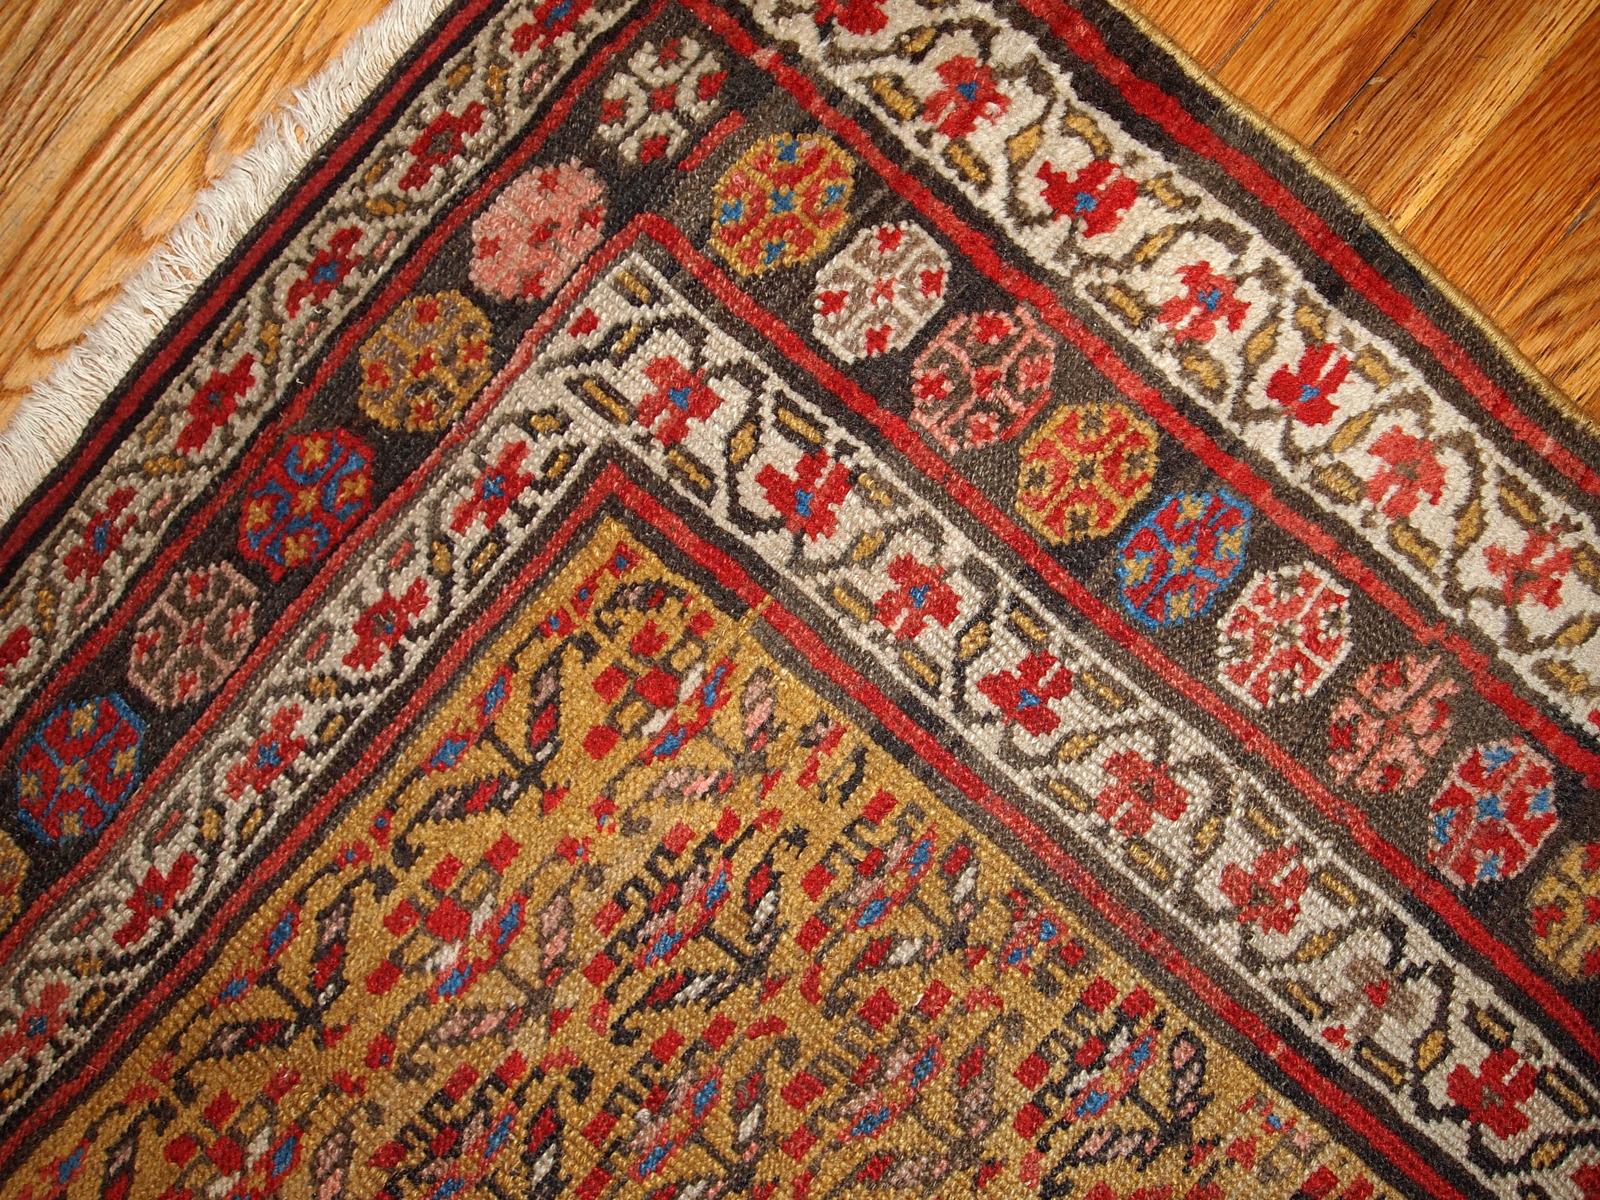 Alfombra antigua de estilo kurdo en colores amarillo, blanco y rojo. La alfombra es de finales del siglo XIX, en buen estado. Medidas: 125 cm x 235 cm (4,1' x 7,7').